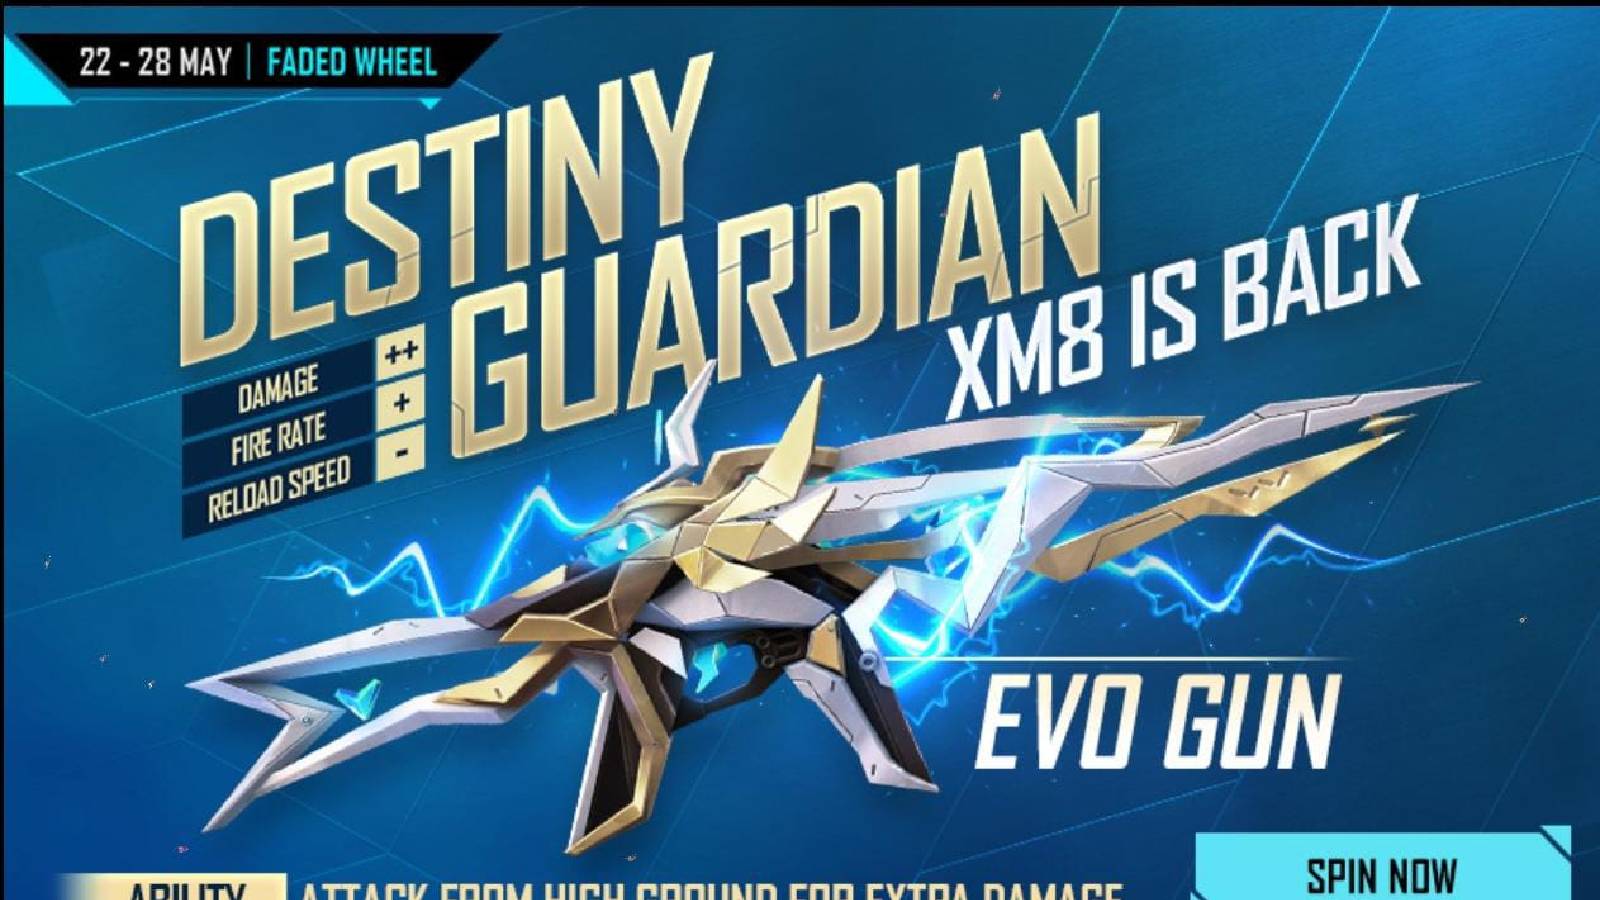 Новое событие Free Fire Faded Wheel: как получить скин для оружия XM8 Destiny Guardian Evo?